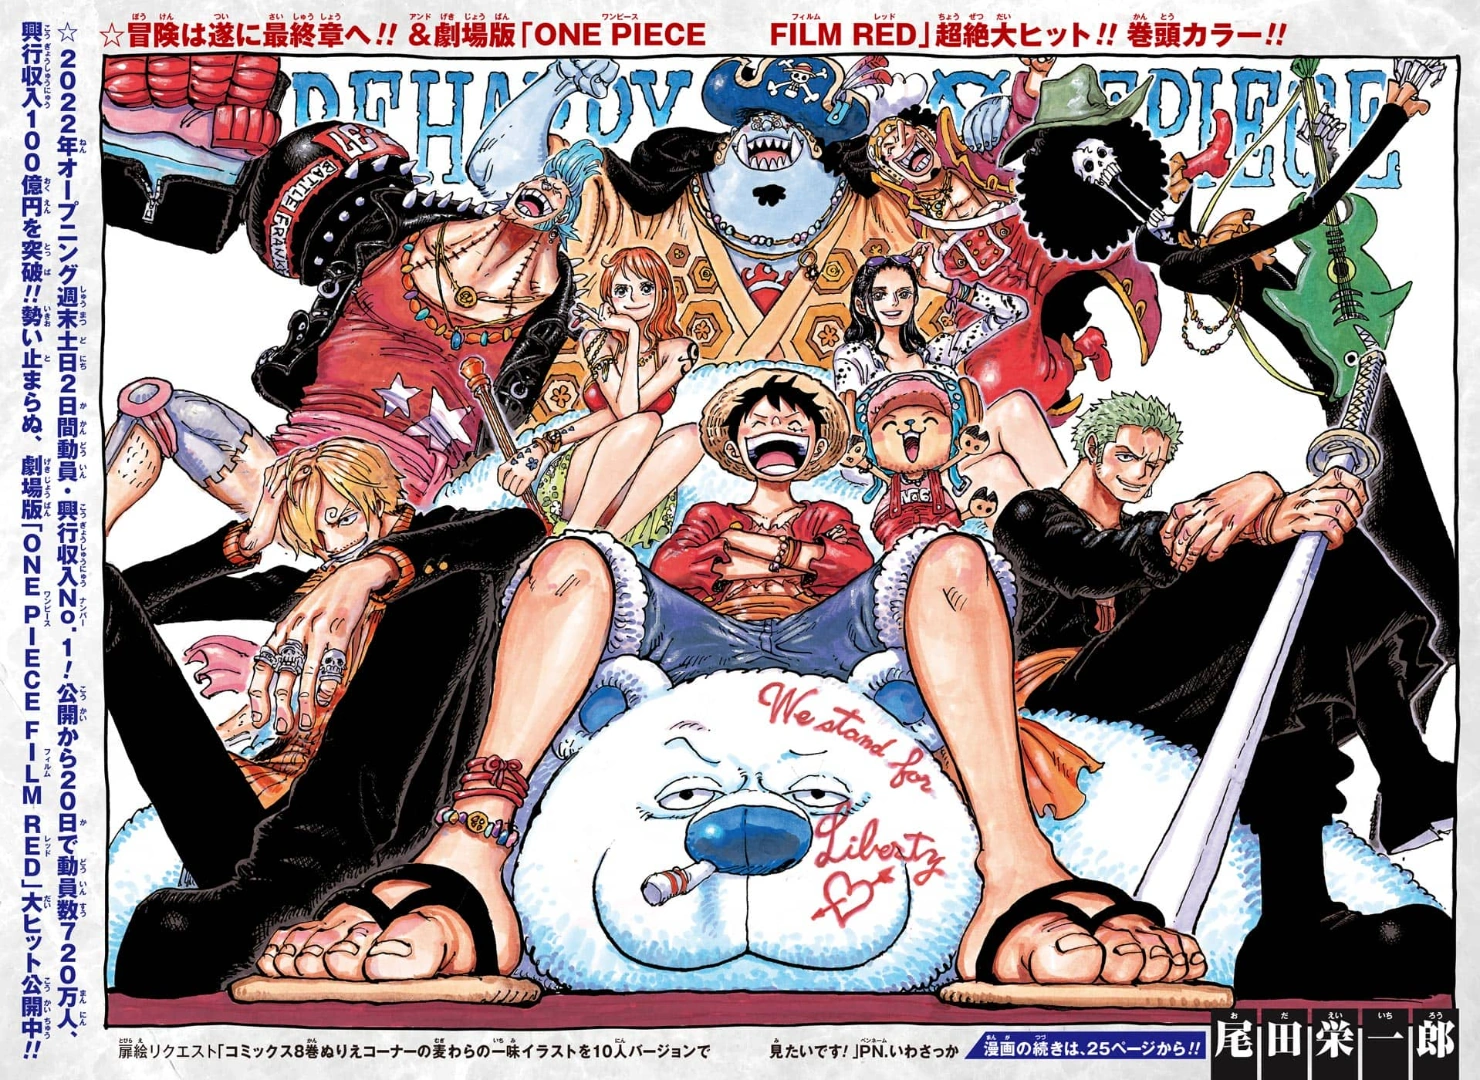 En que capítulo del manga va el anime de One Piece?